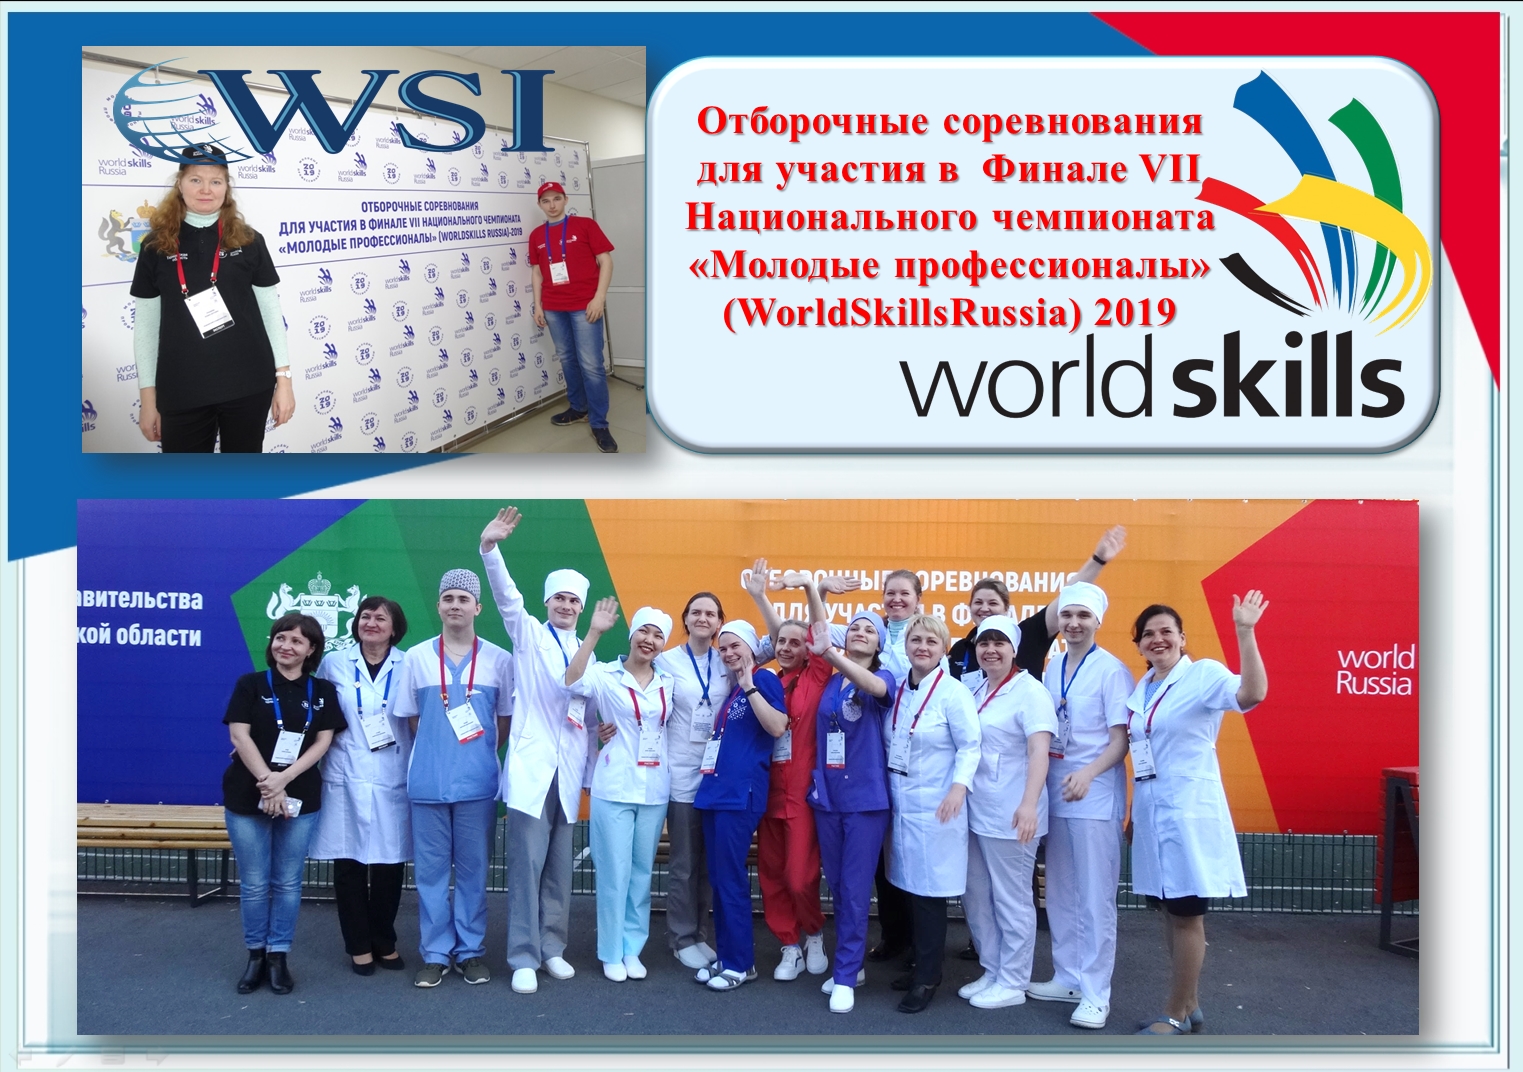 Нижегородский медицинский портал. Национальный Чемпионат WORLDSKILLS Russia 2019. 2020 Новосибирск World skills.